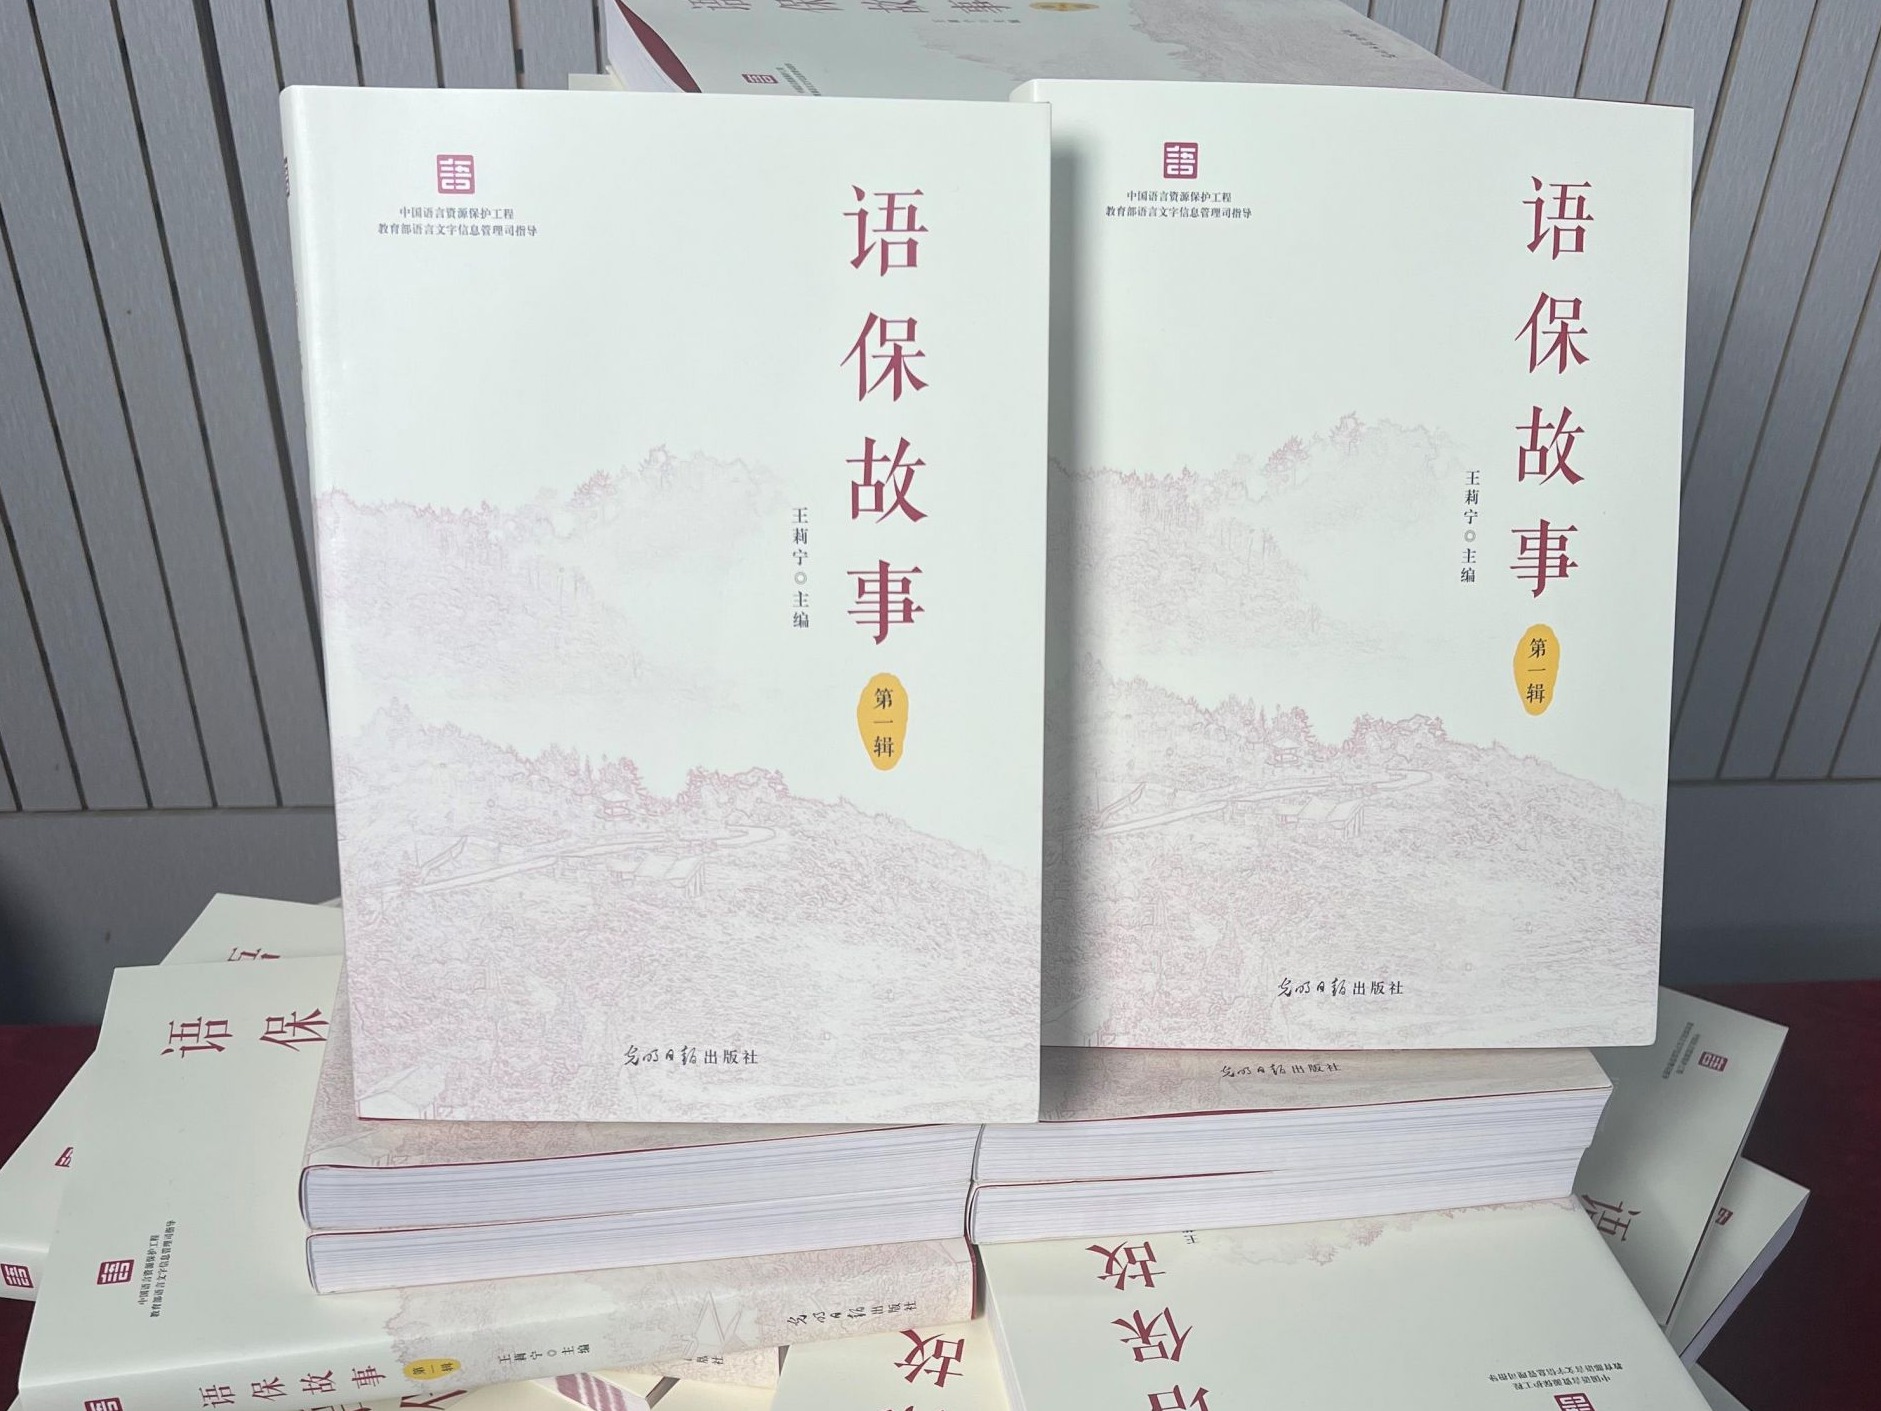 中国语言资源保护工程重要成果《语保故事》发布 